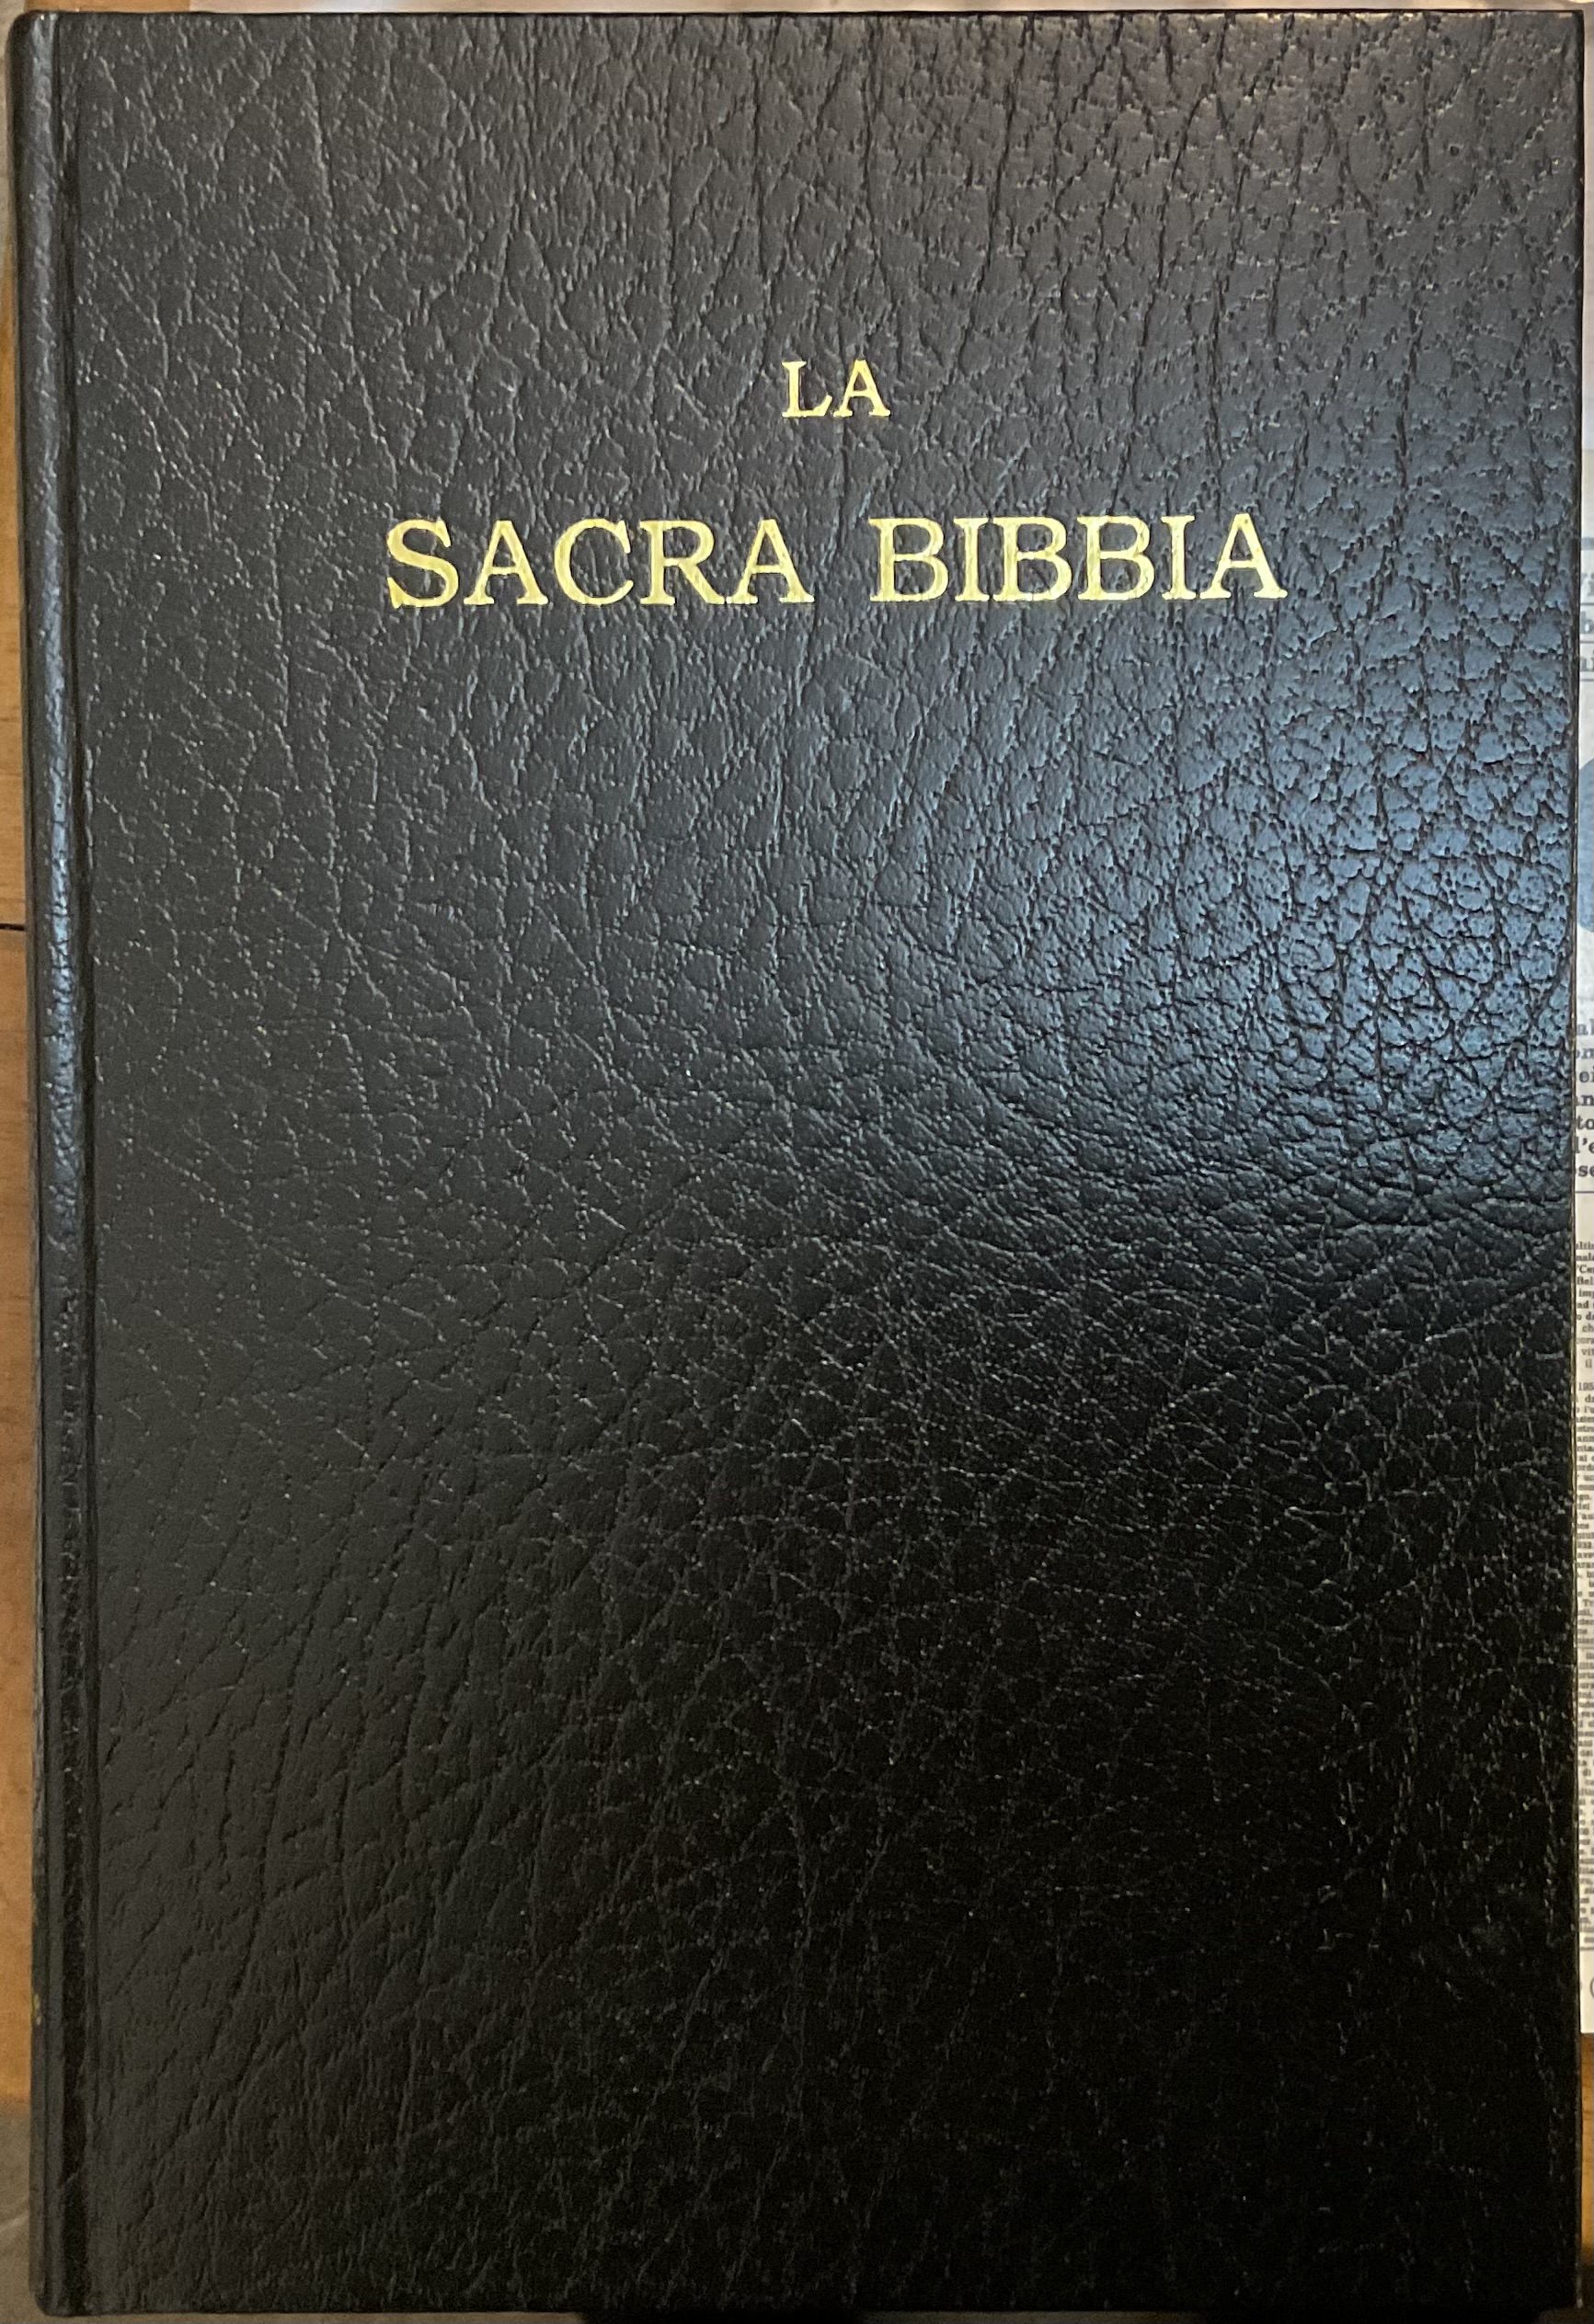 La Sacra Bibbia, ossia l'Antico e il Nuovo Testamento. Versione riveduta in  testo originale dal Dott. Giovanni Luzzi – Il Morto da Feltre